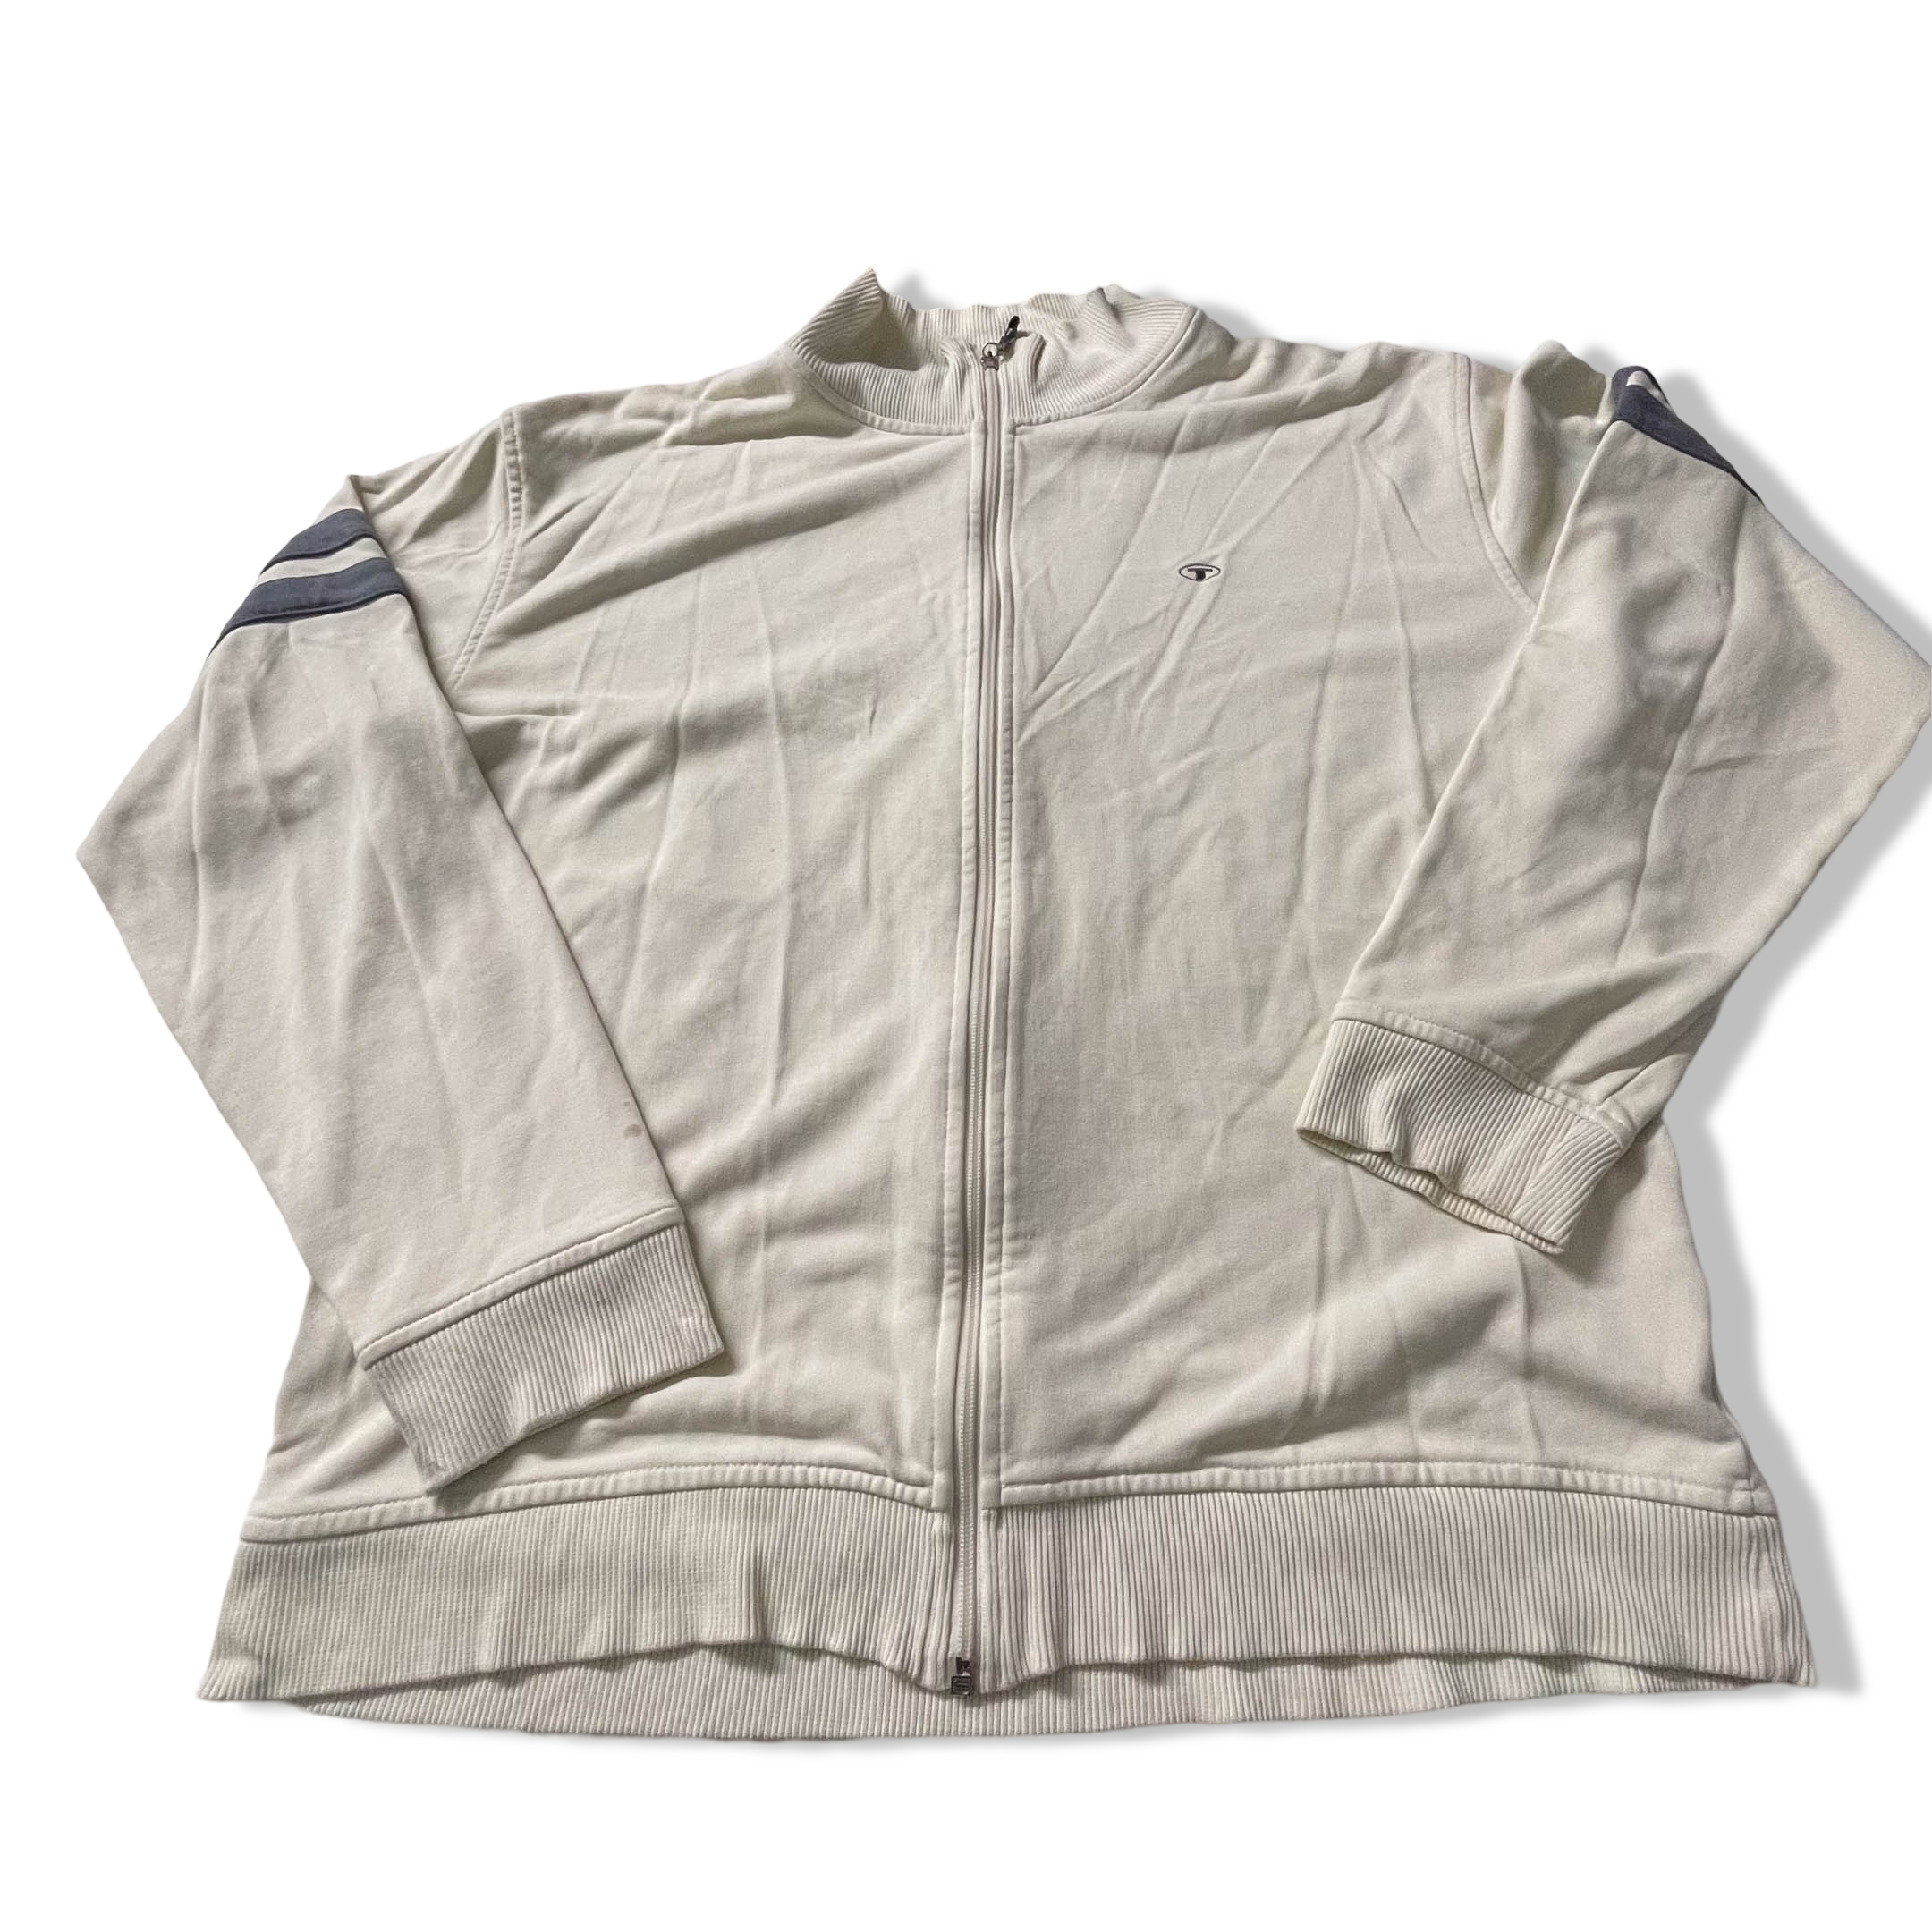 Vintage white Tom Tailor full zip high neck men's Jacket in 2XL| SKU 3841l L29 W 25